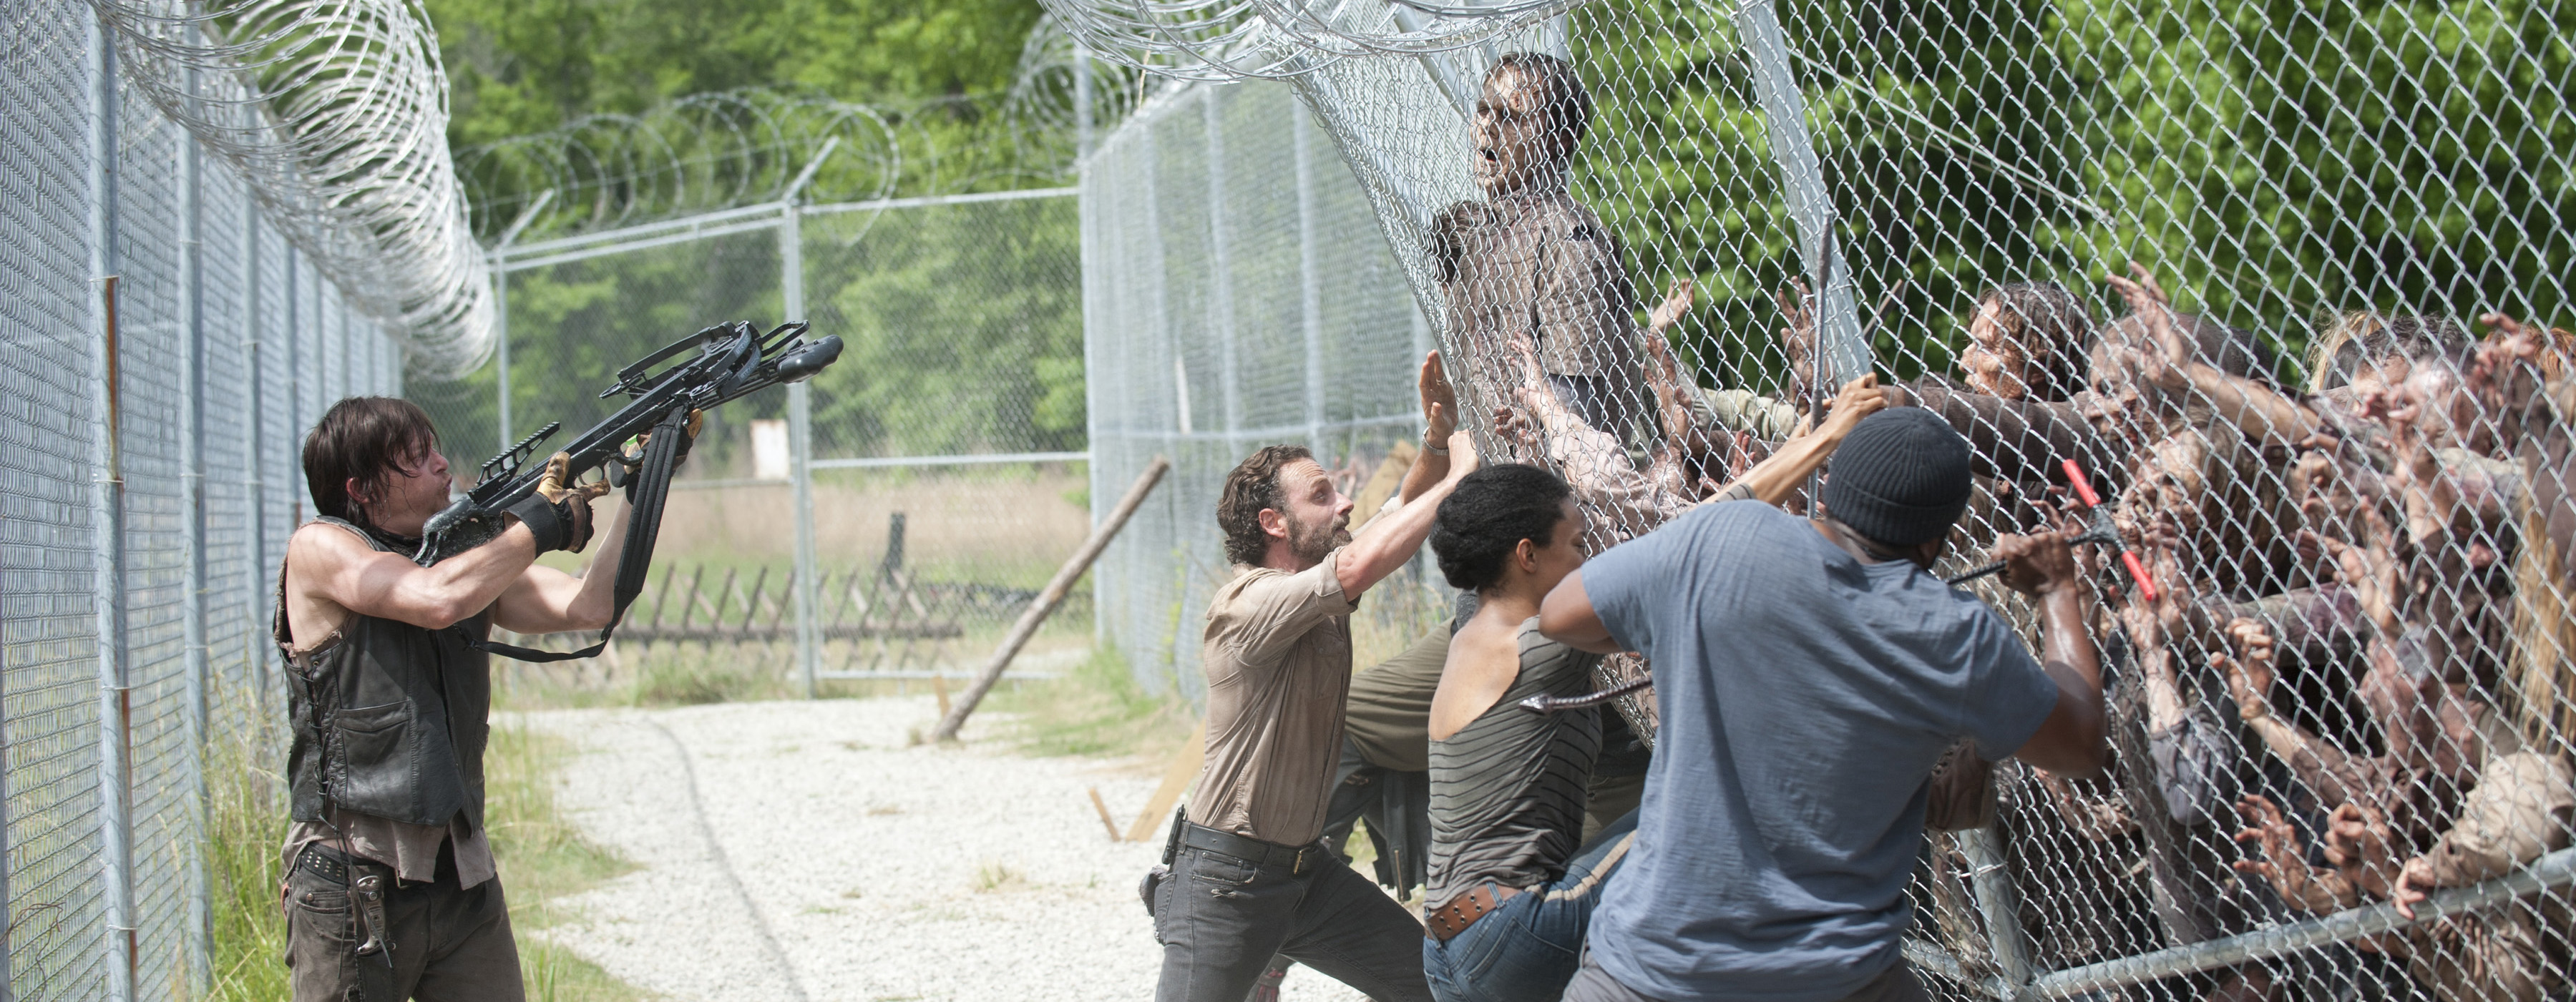 Por dentro de The Walking Dead: Elenco e produtores comentam o episódio S04E02 – “Infected”